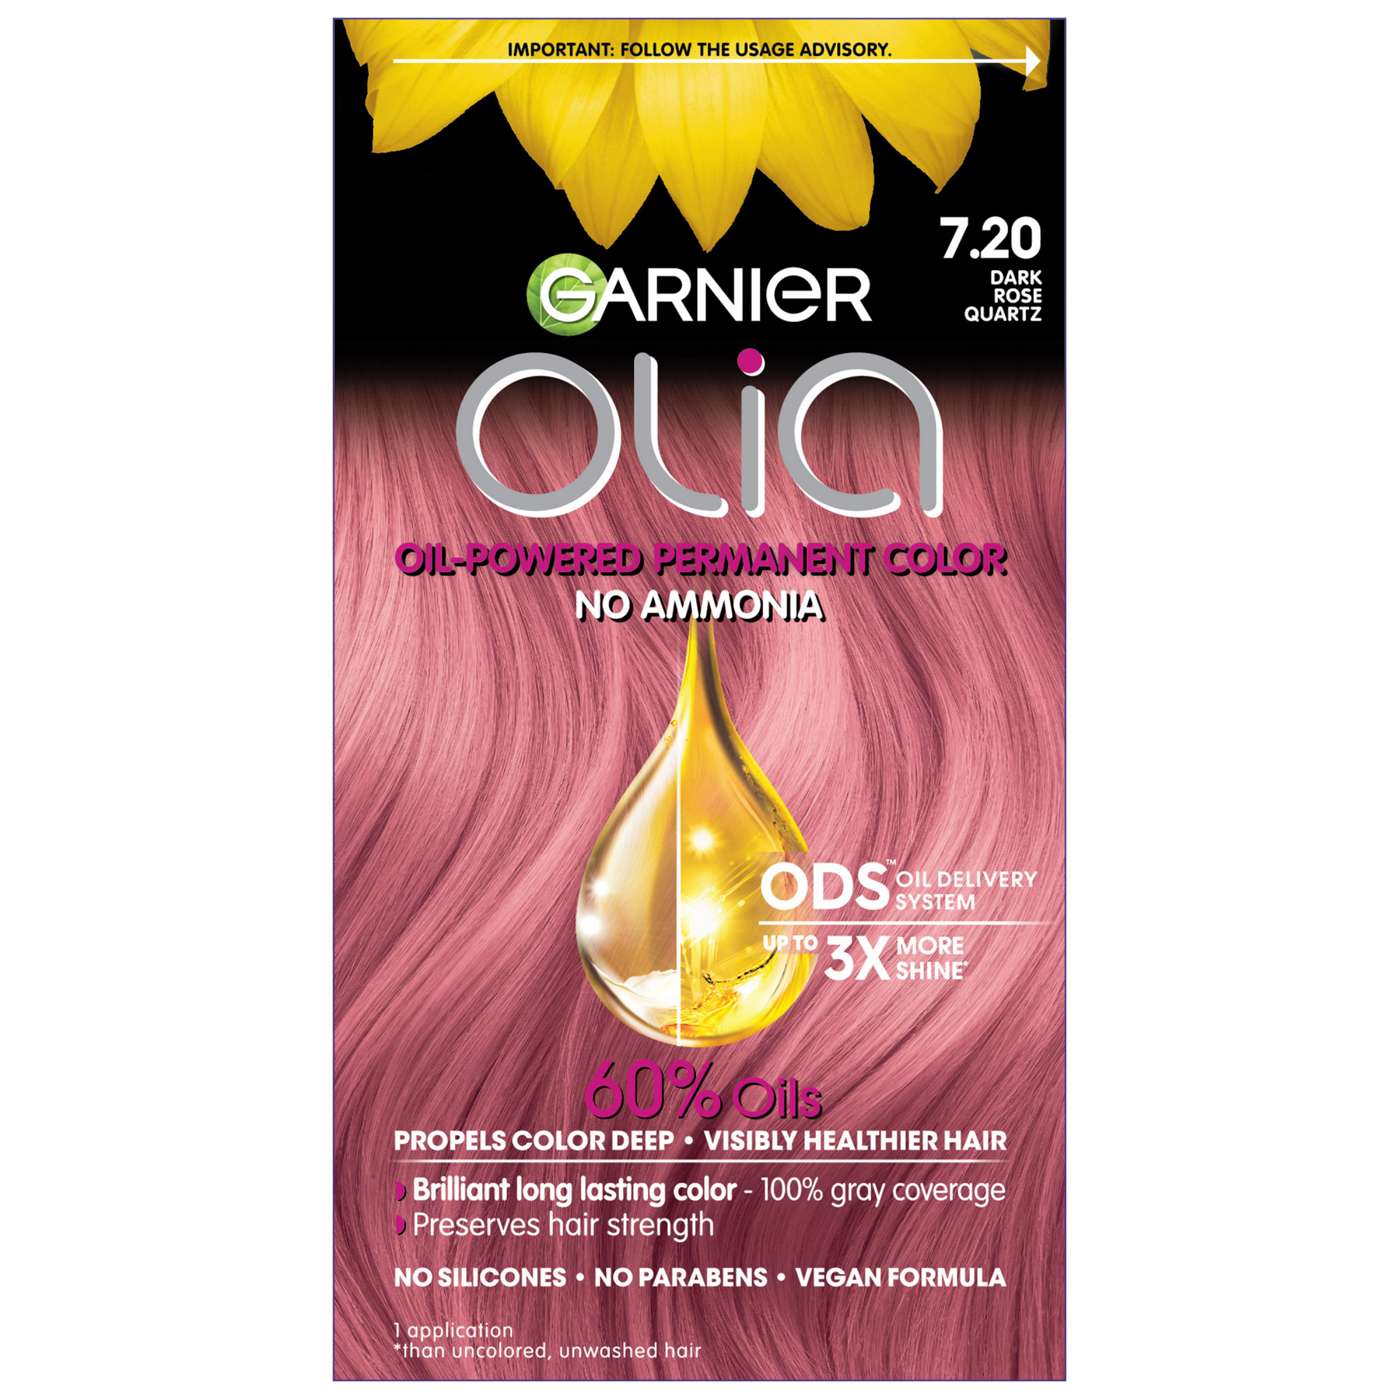 Garnier Olia Oil Powered Ammonia Free Permanent Hair Color 7.20 Dark Rose Quartz; image 6 of 16